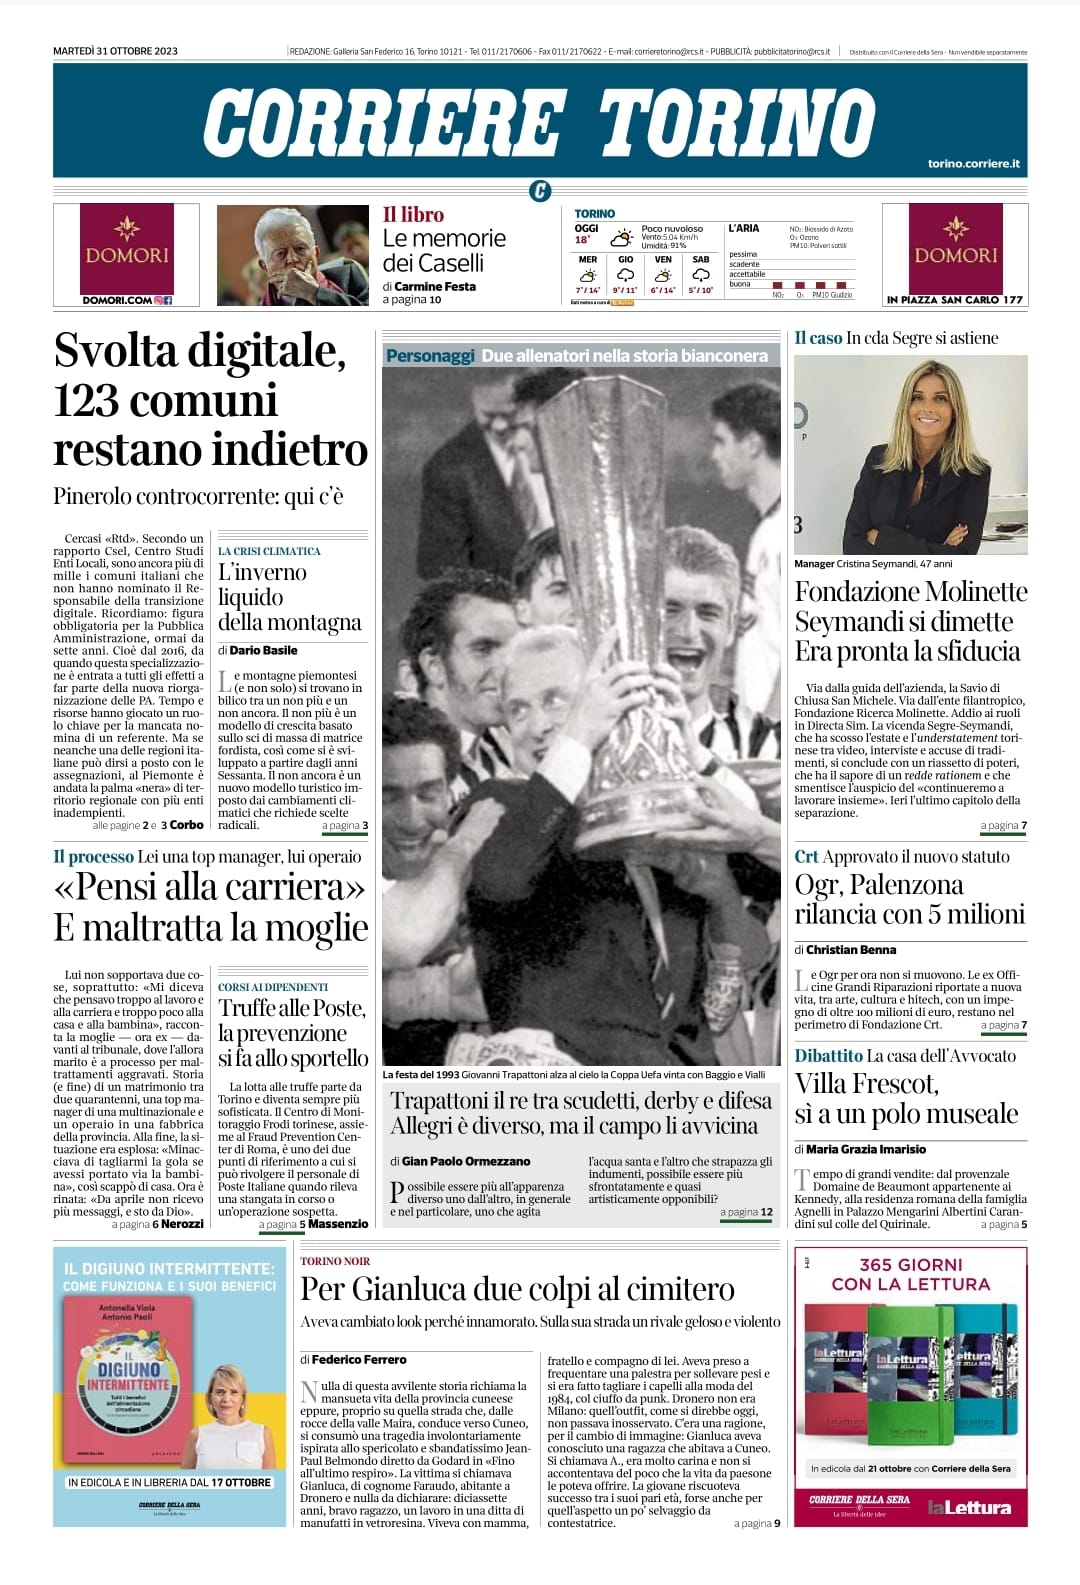 La prima pagina dell'edizione di Torino Corriere della Sera 